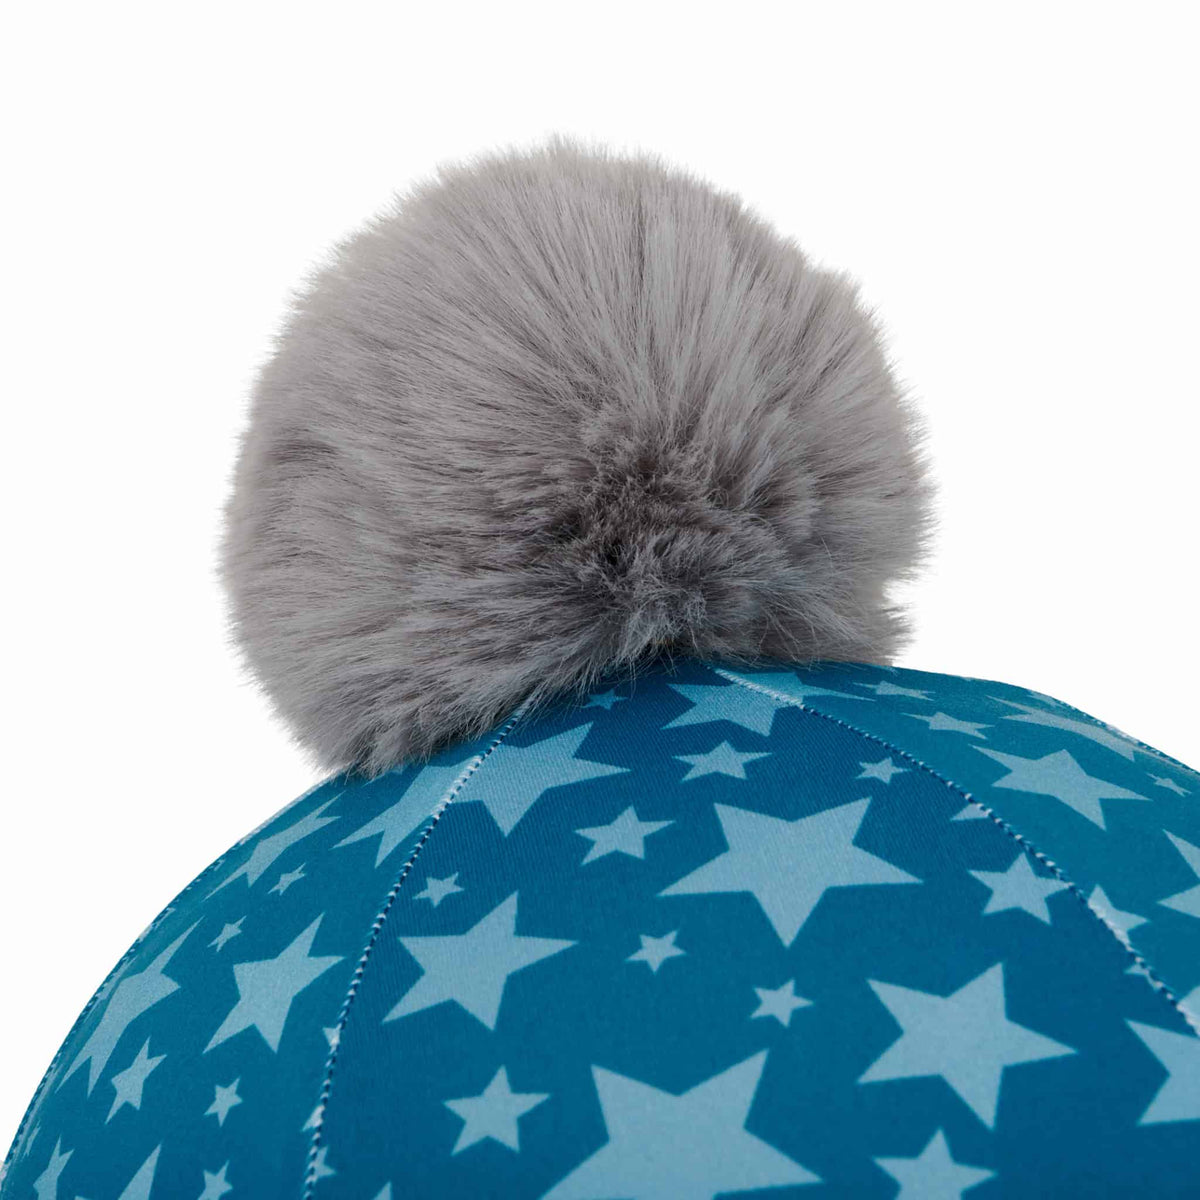 LeMieux Mini Pom Pom Hat Silk - One Size